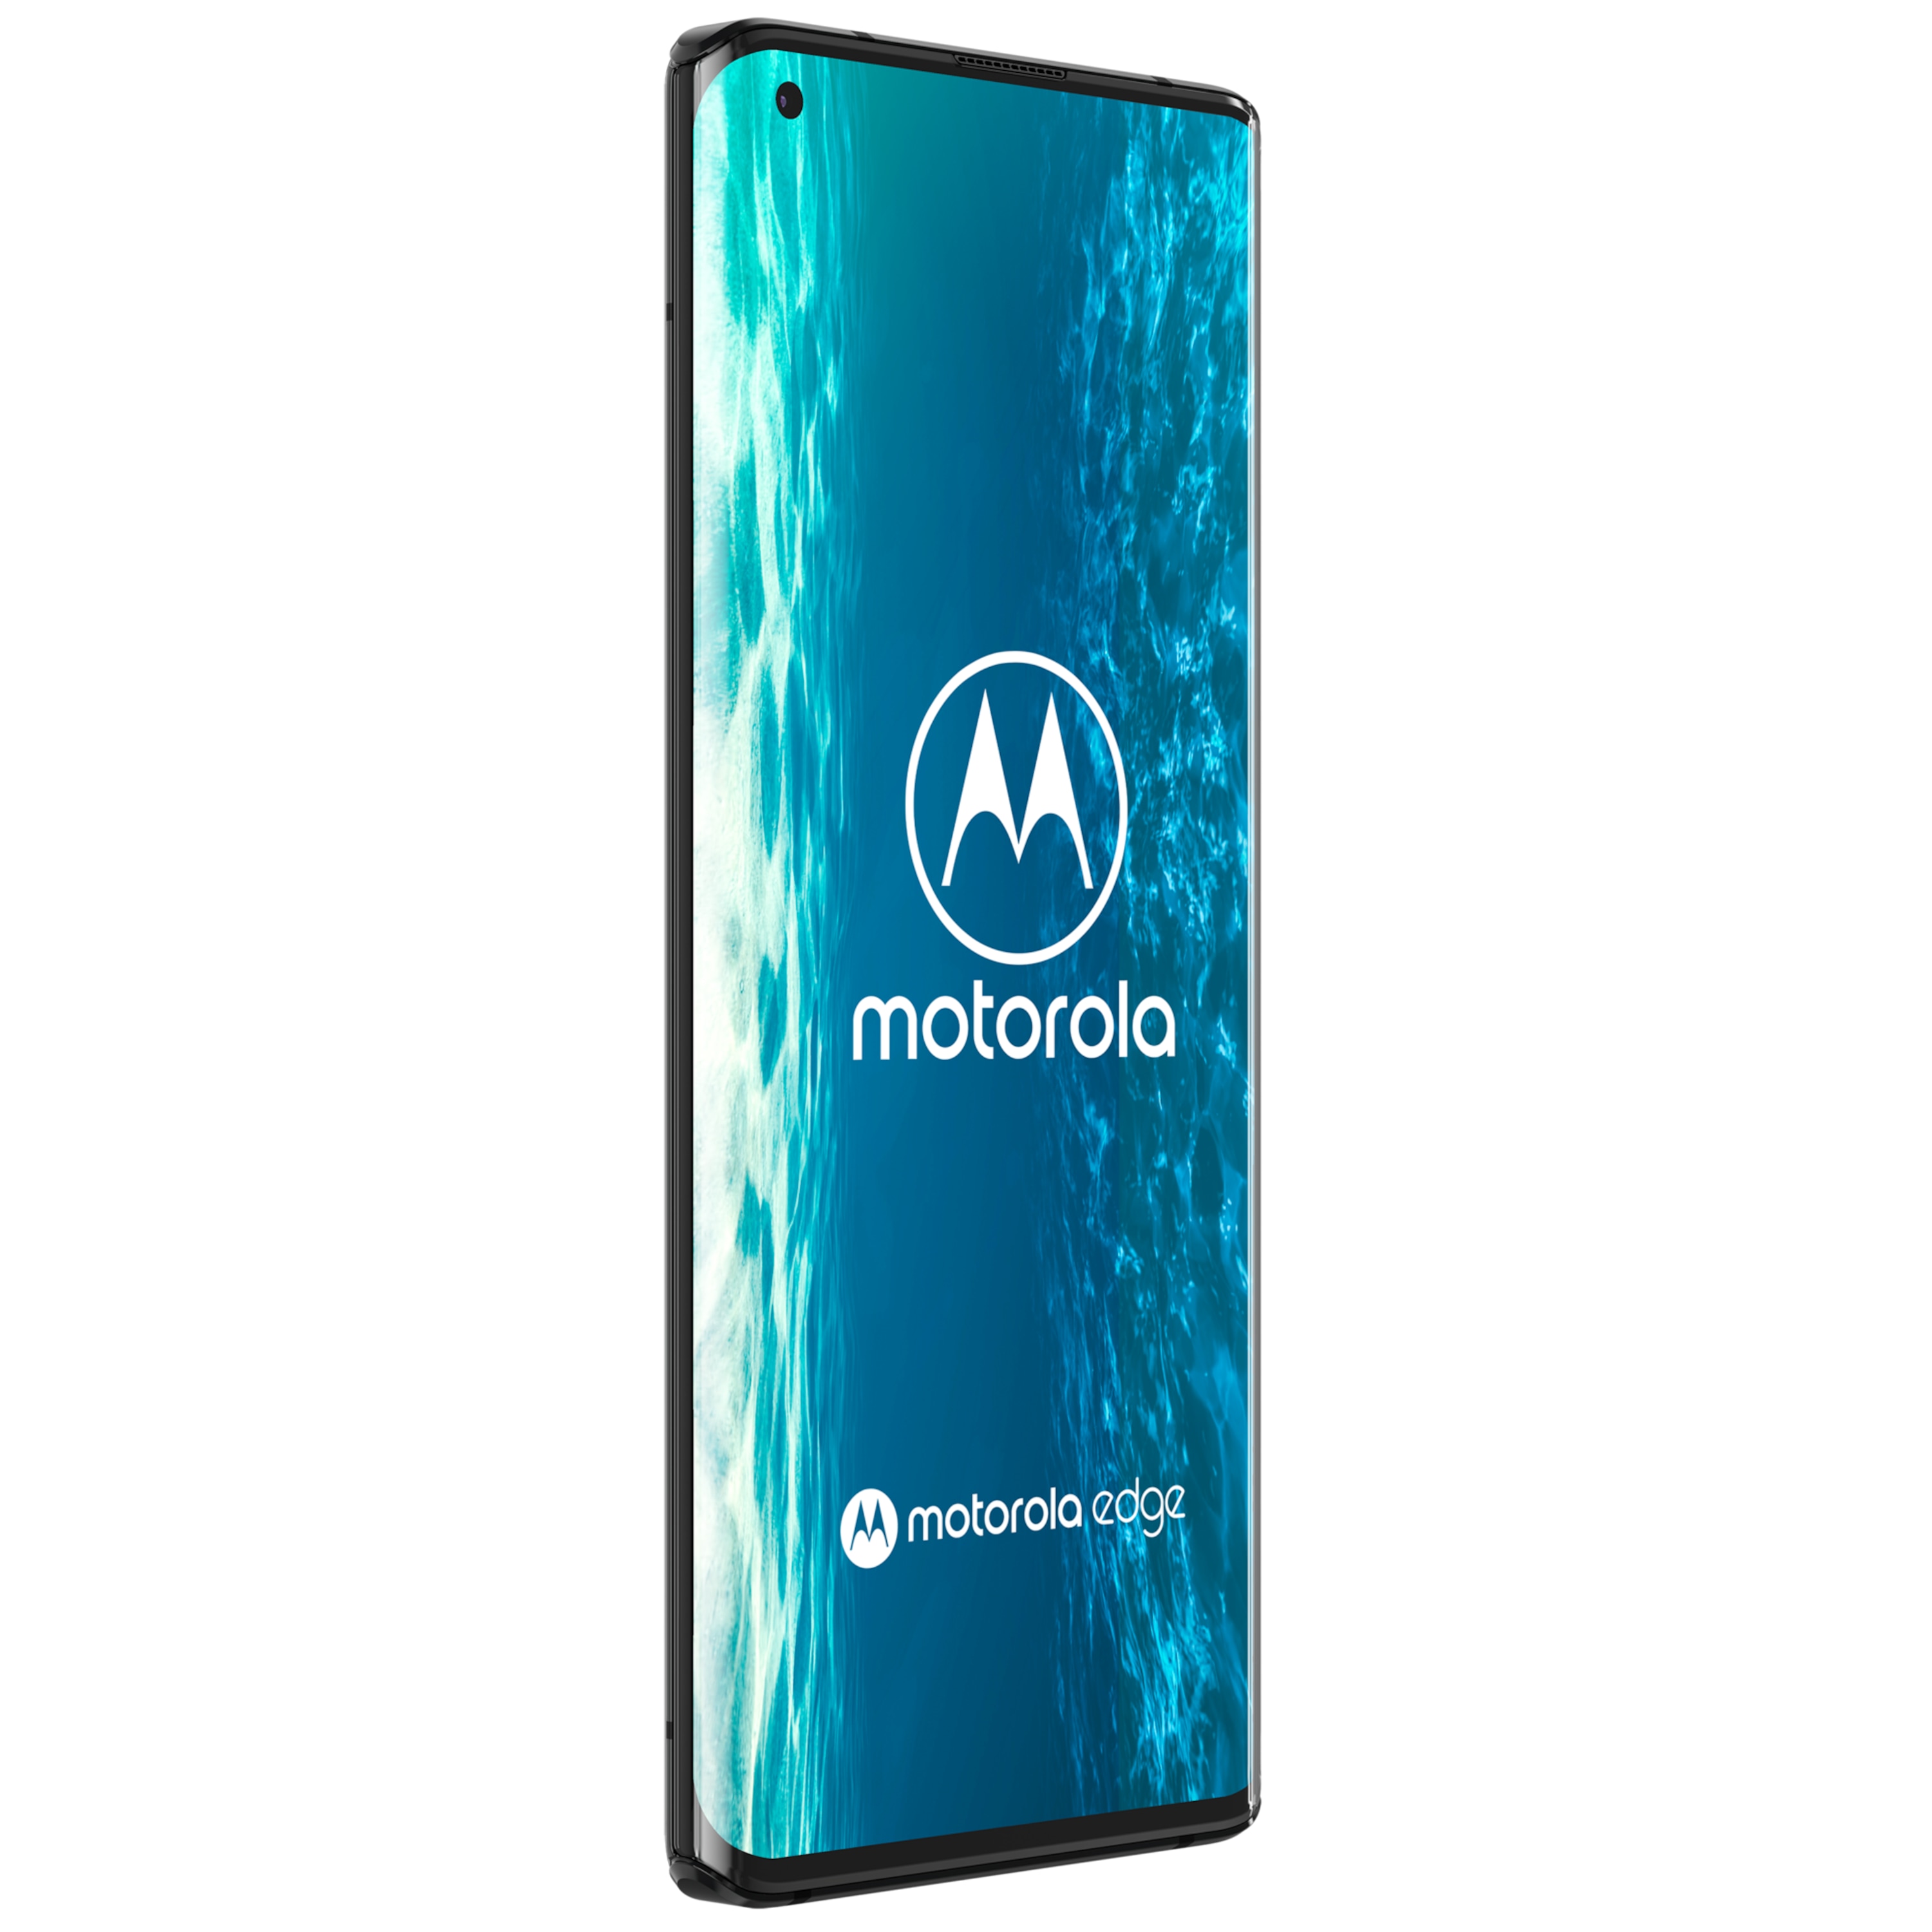 MOTOROLA egde, Smartphone, 16,94 cm (6,67") FHD+ Display, Android™ 10, 128 GB Speicher, 6 GB Arbeitsspeicher, Octa-Core-Prozessor, Bluetooth® 5.1, 5G LTE